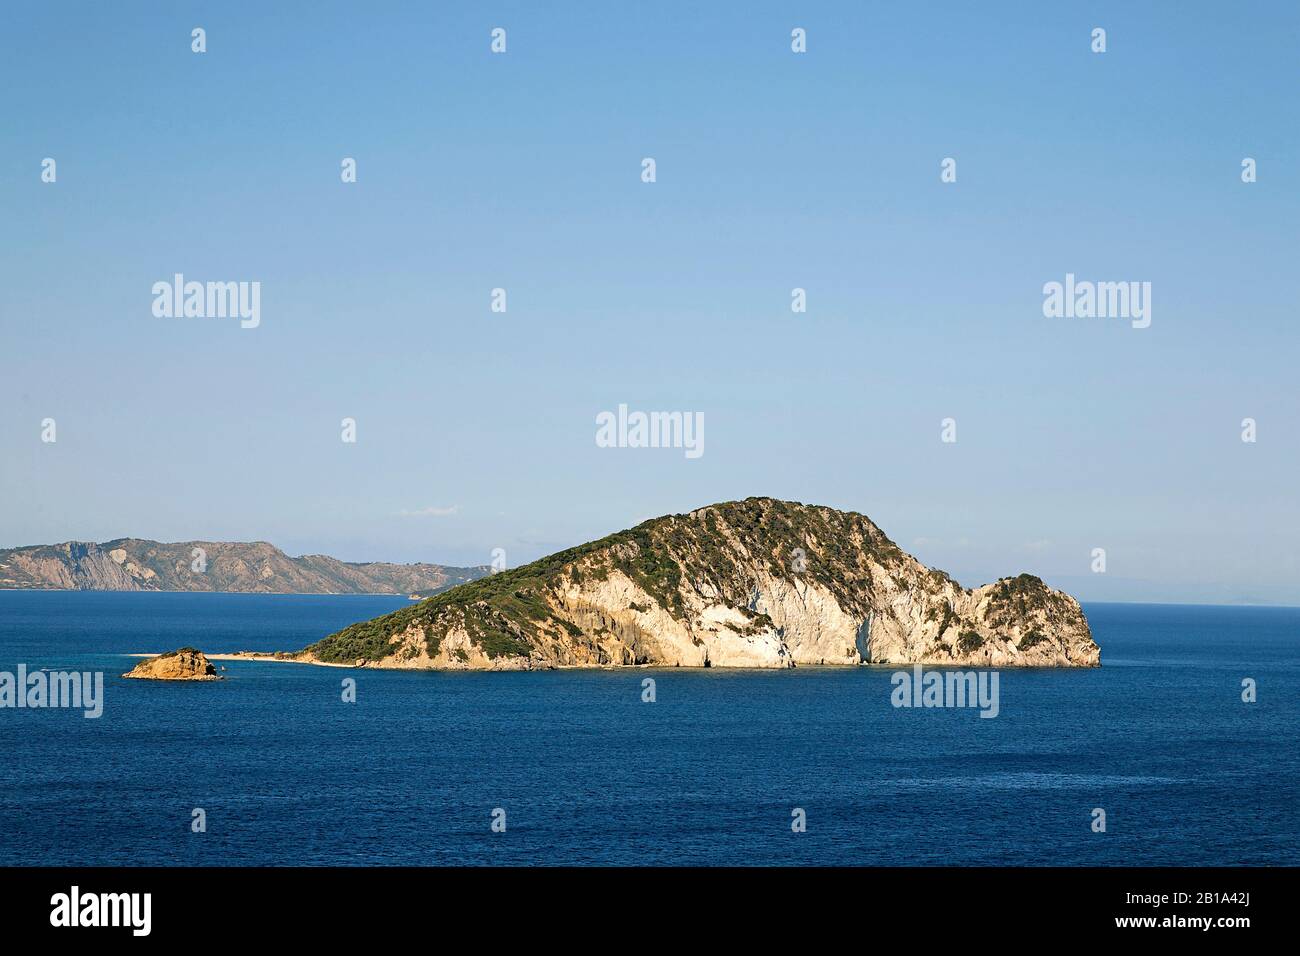 La petite île de Marathonissi, Limni Keriou, Zante île, Grèce Banque D'Images